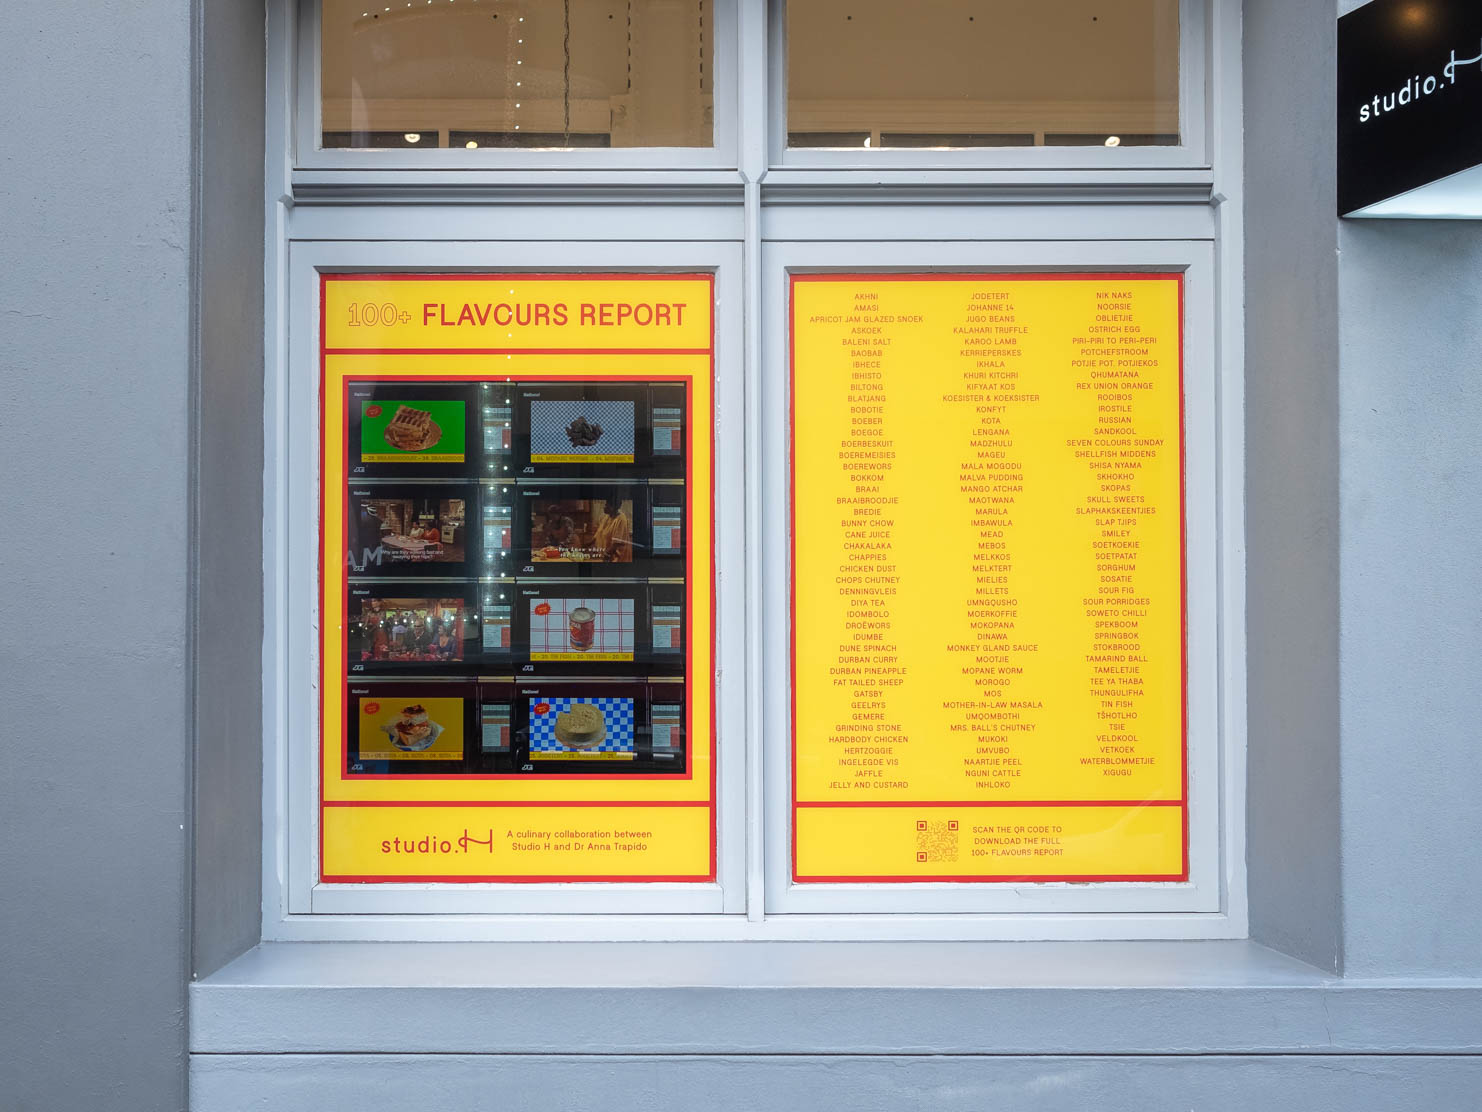 Window installation by artist Claire Johnson